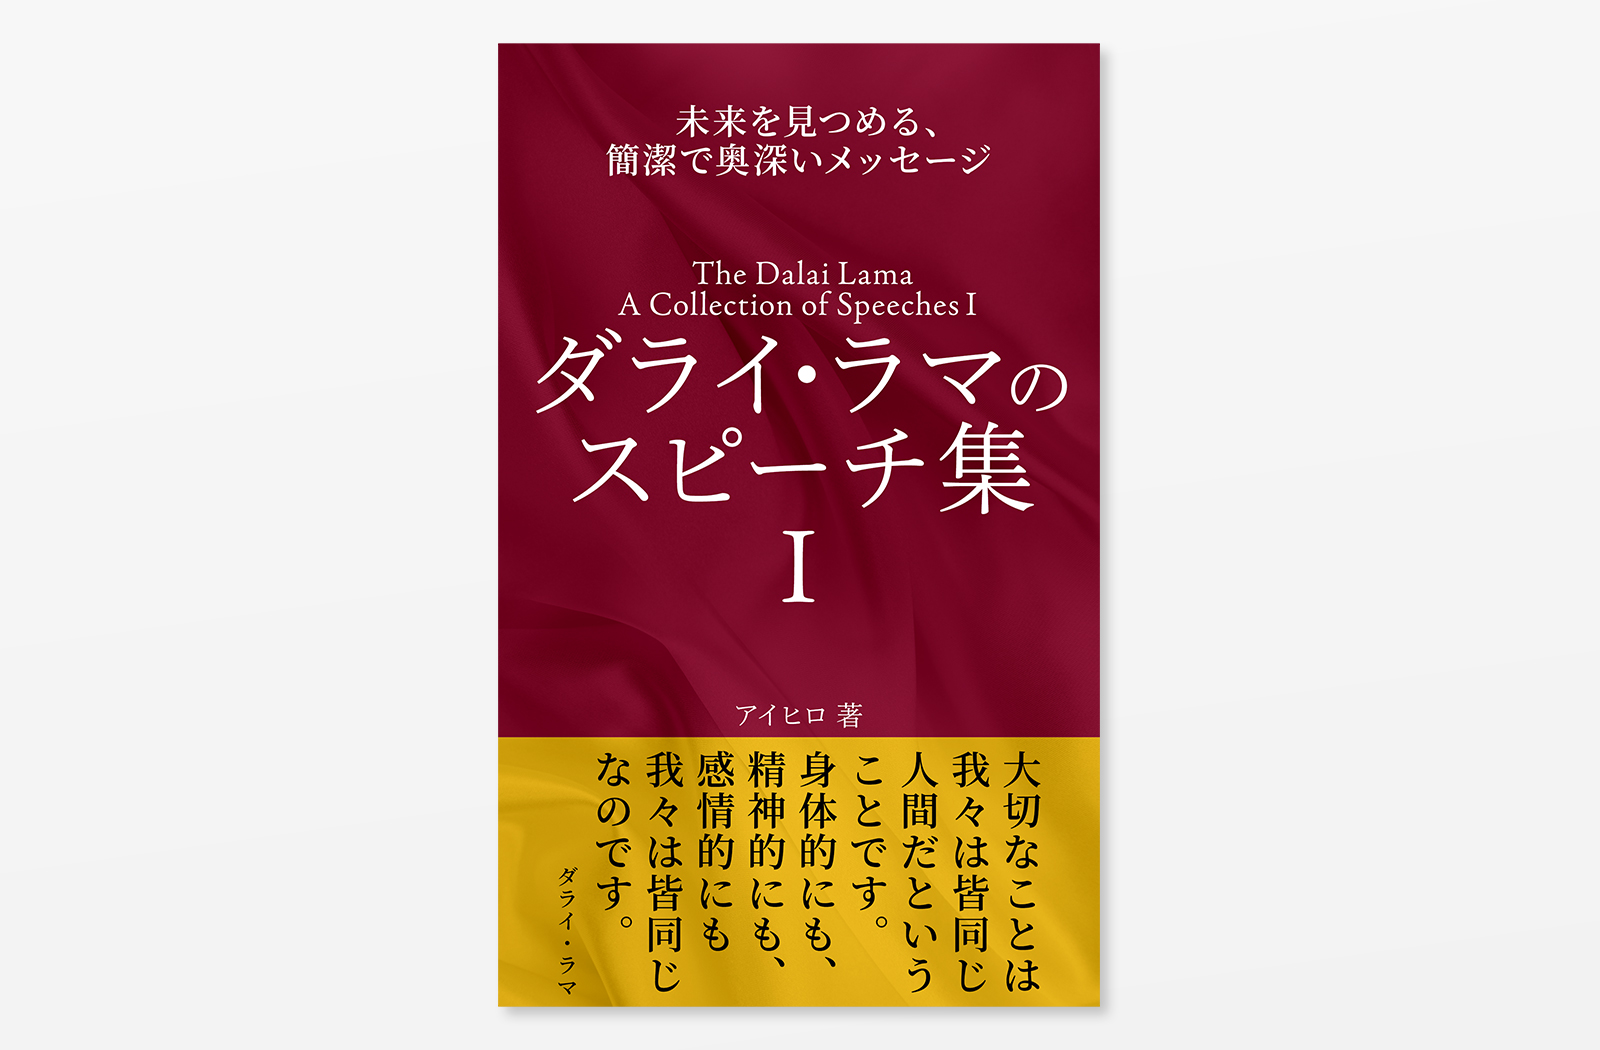 Kindle電子書籍「ダライ・ラマのスピーチ集 I: 未来を見つめる簡潔で奥深いメッセージ」の表紙デザイン